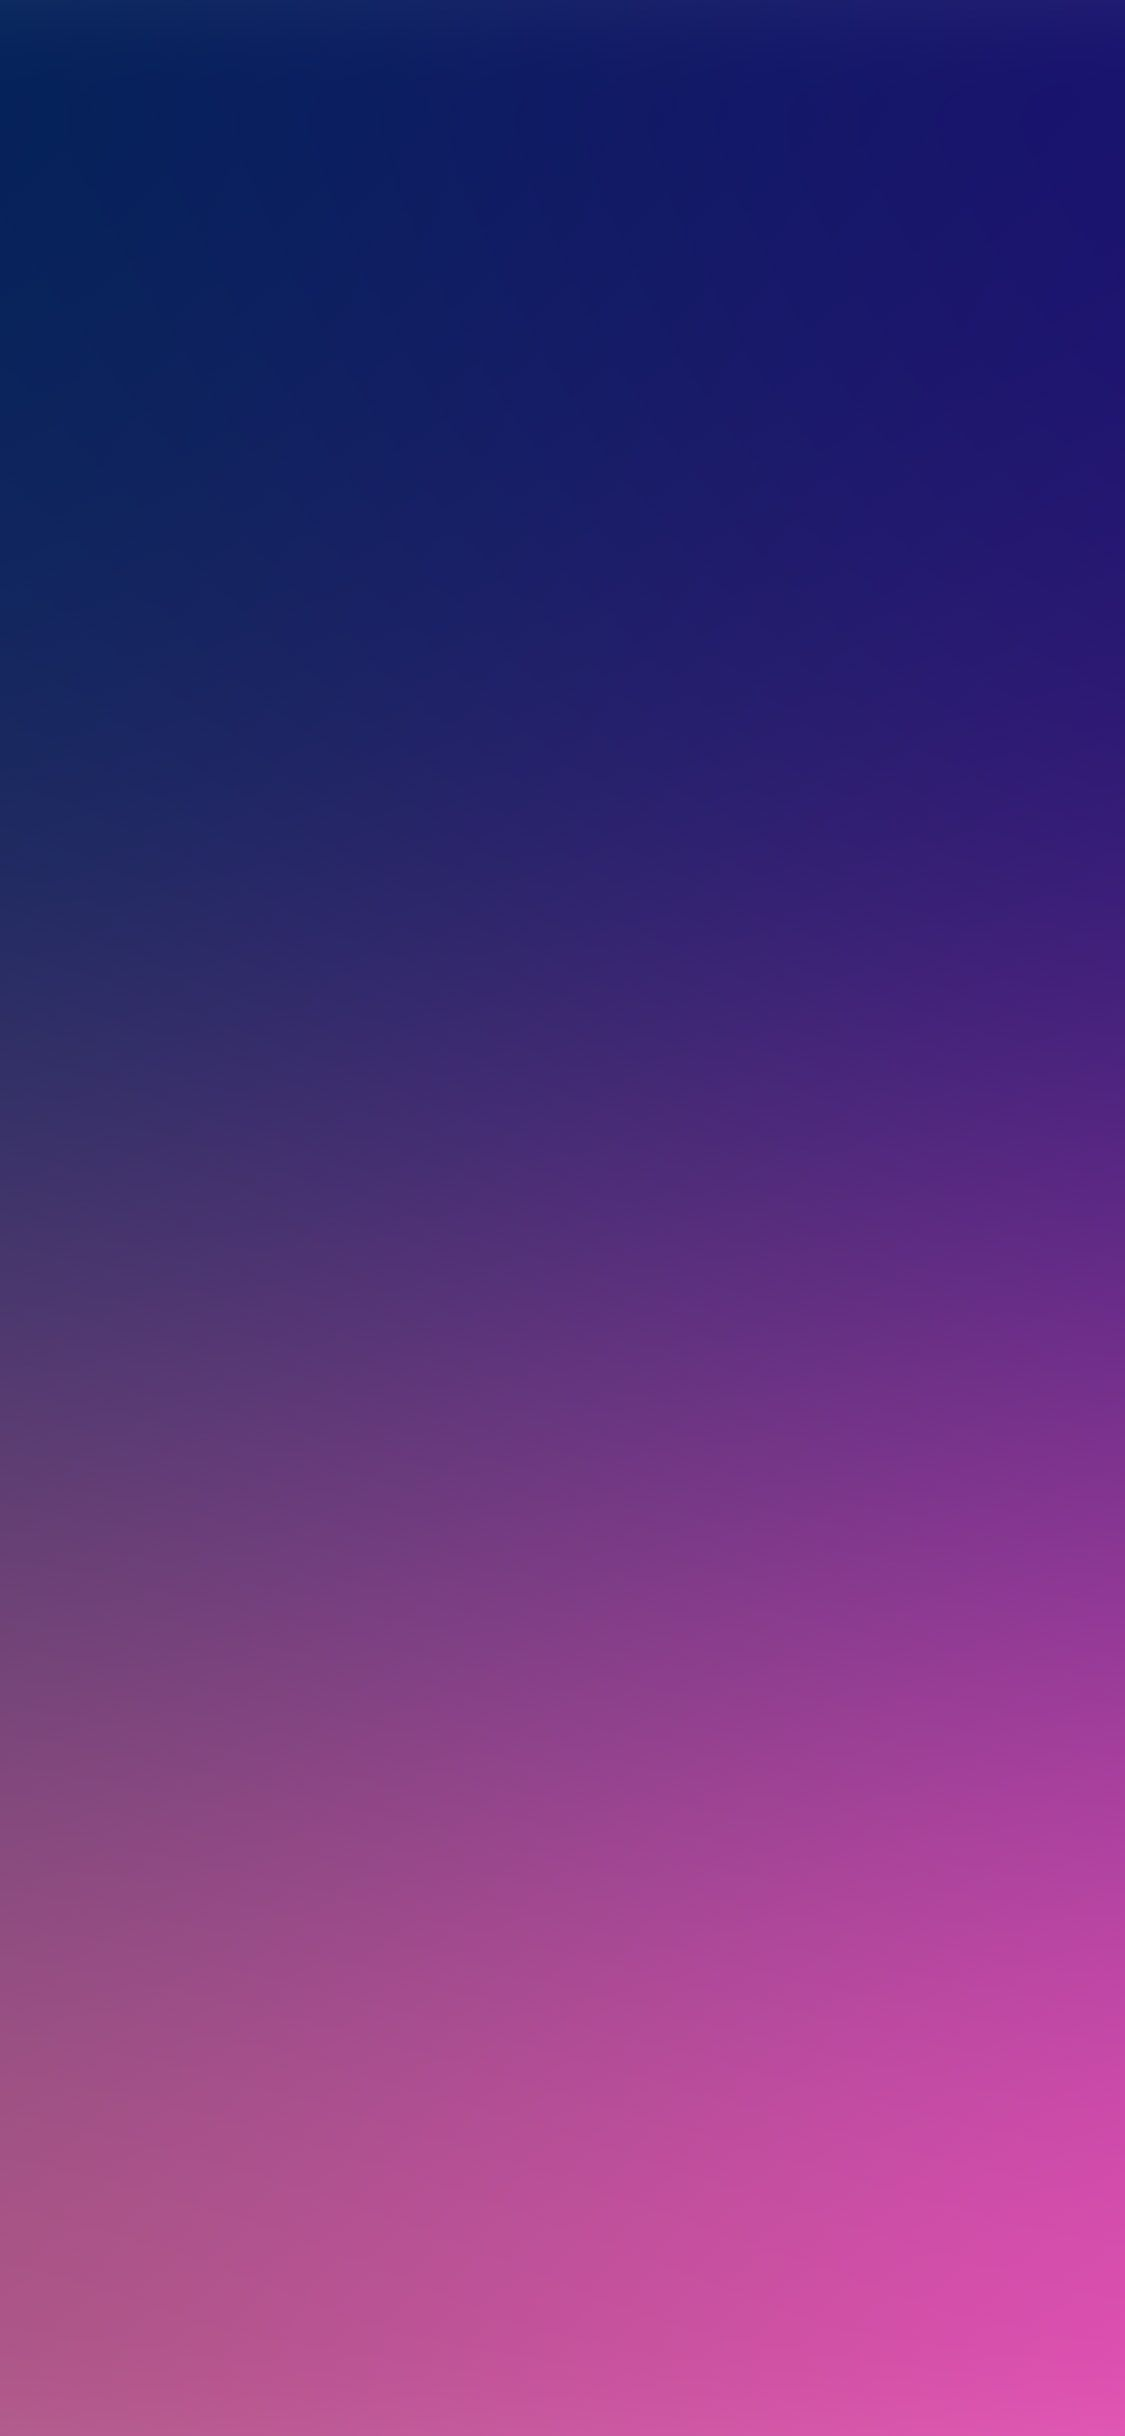 1125x2436 sm27-blue-purple-color-blur-gradation via Wallpapers for iPhone X | Color blur, Purple colour wallpaper, Black wallpaper